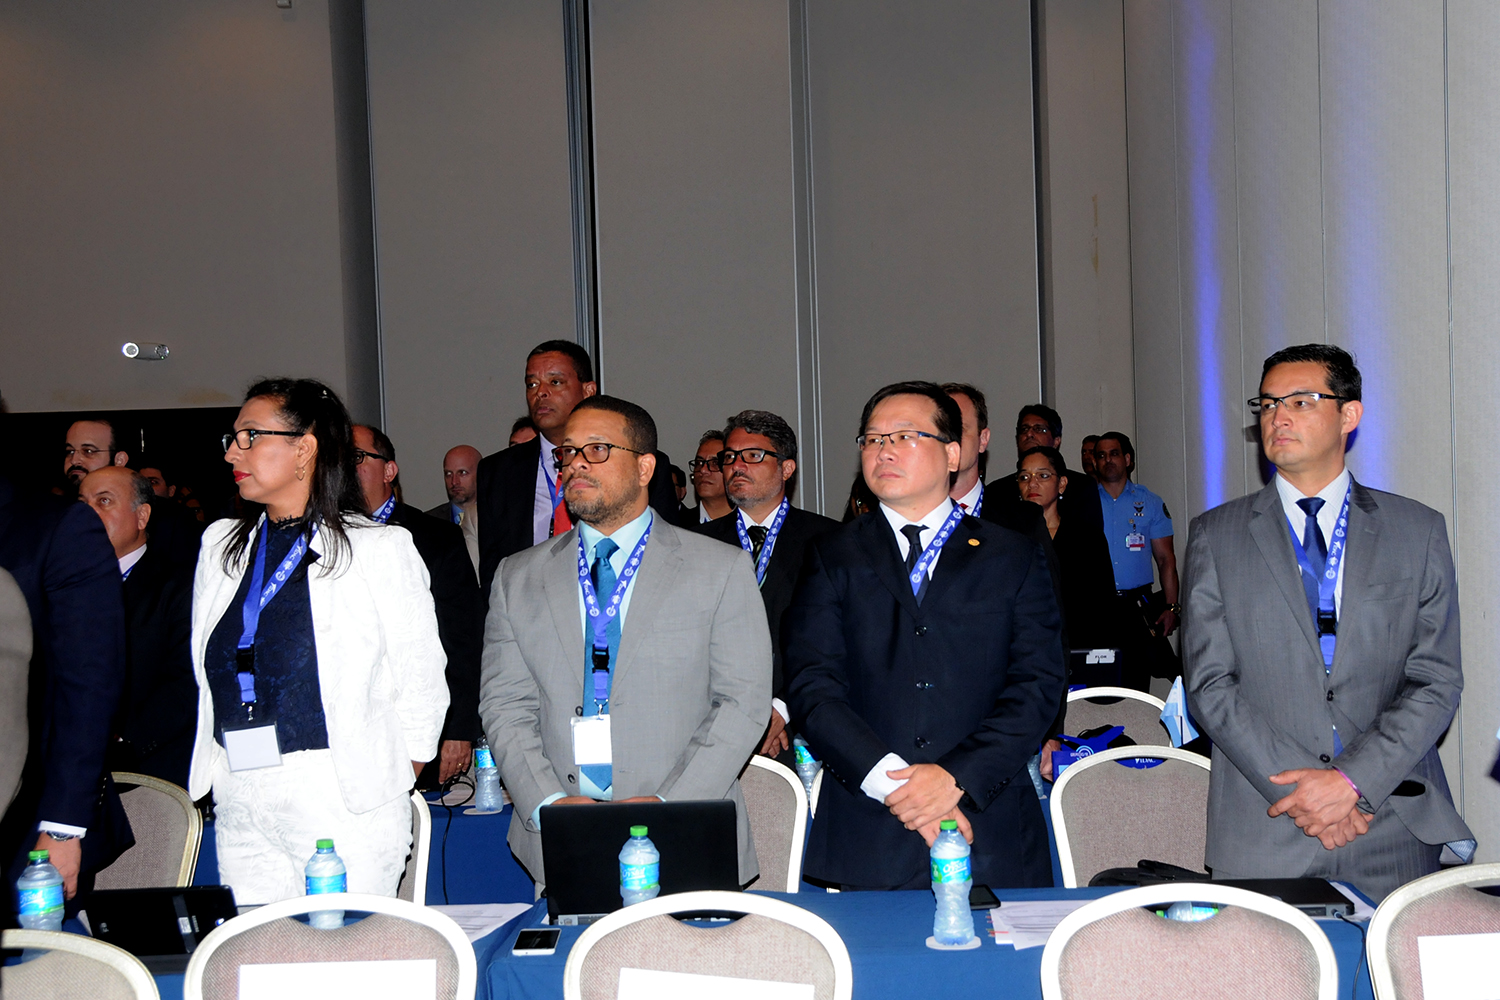 delegação brasileira na abertura do evento